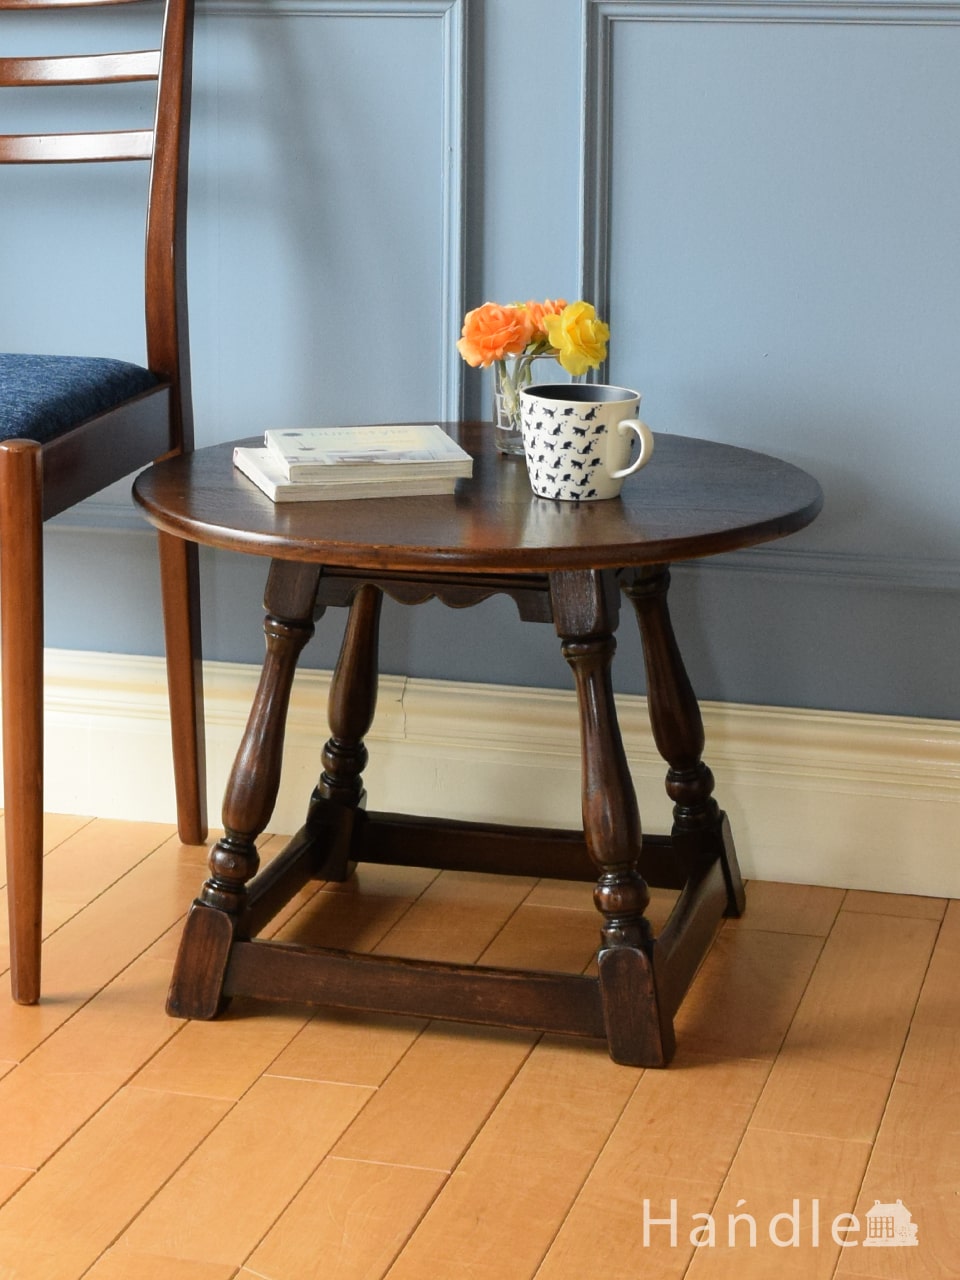 イギリスから届いた丸形のおしゃれなテーブル、気軽に使えるオーク材のコーヒーテーブル (m-1061-f)